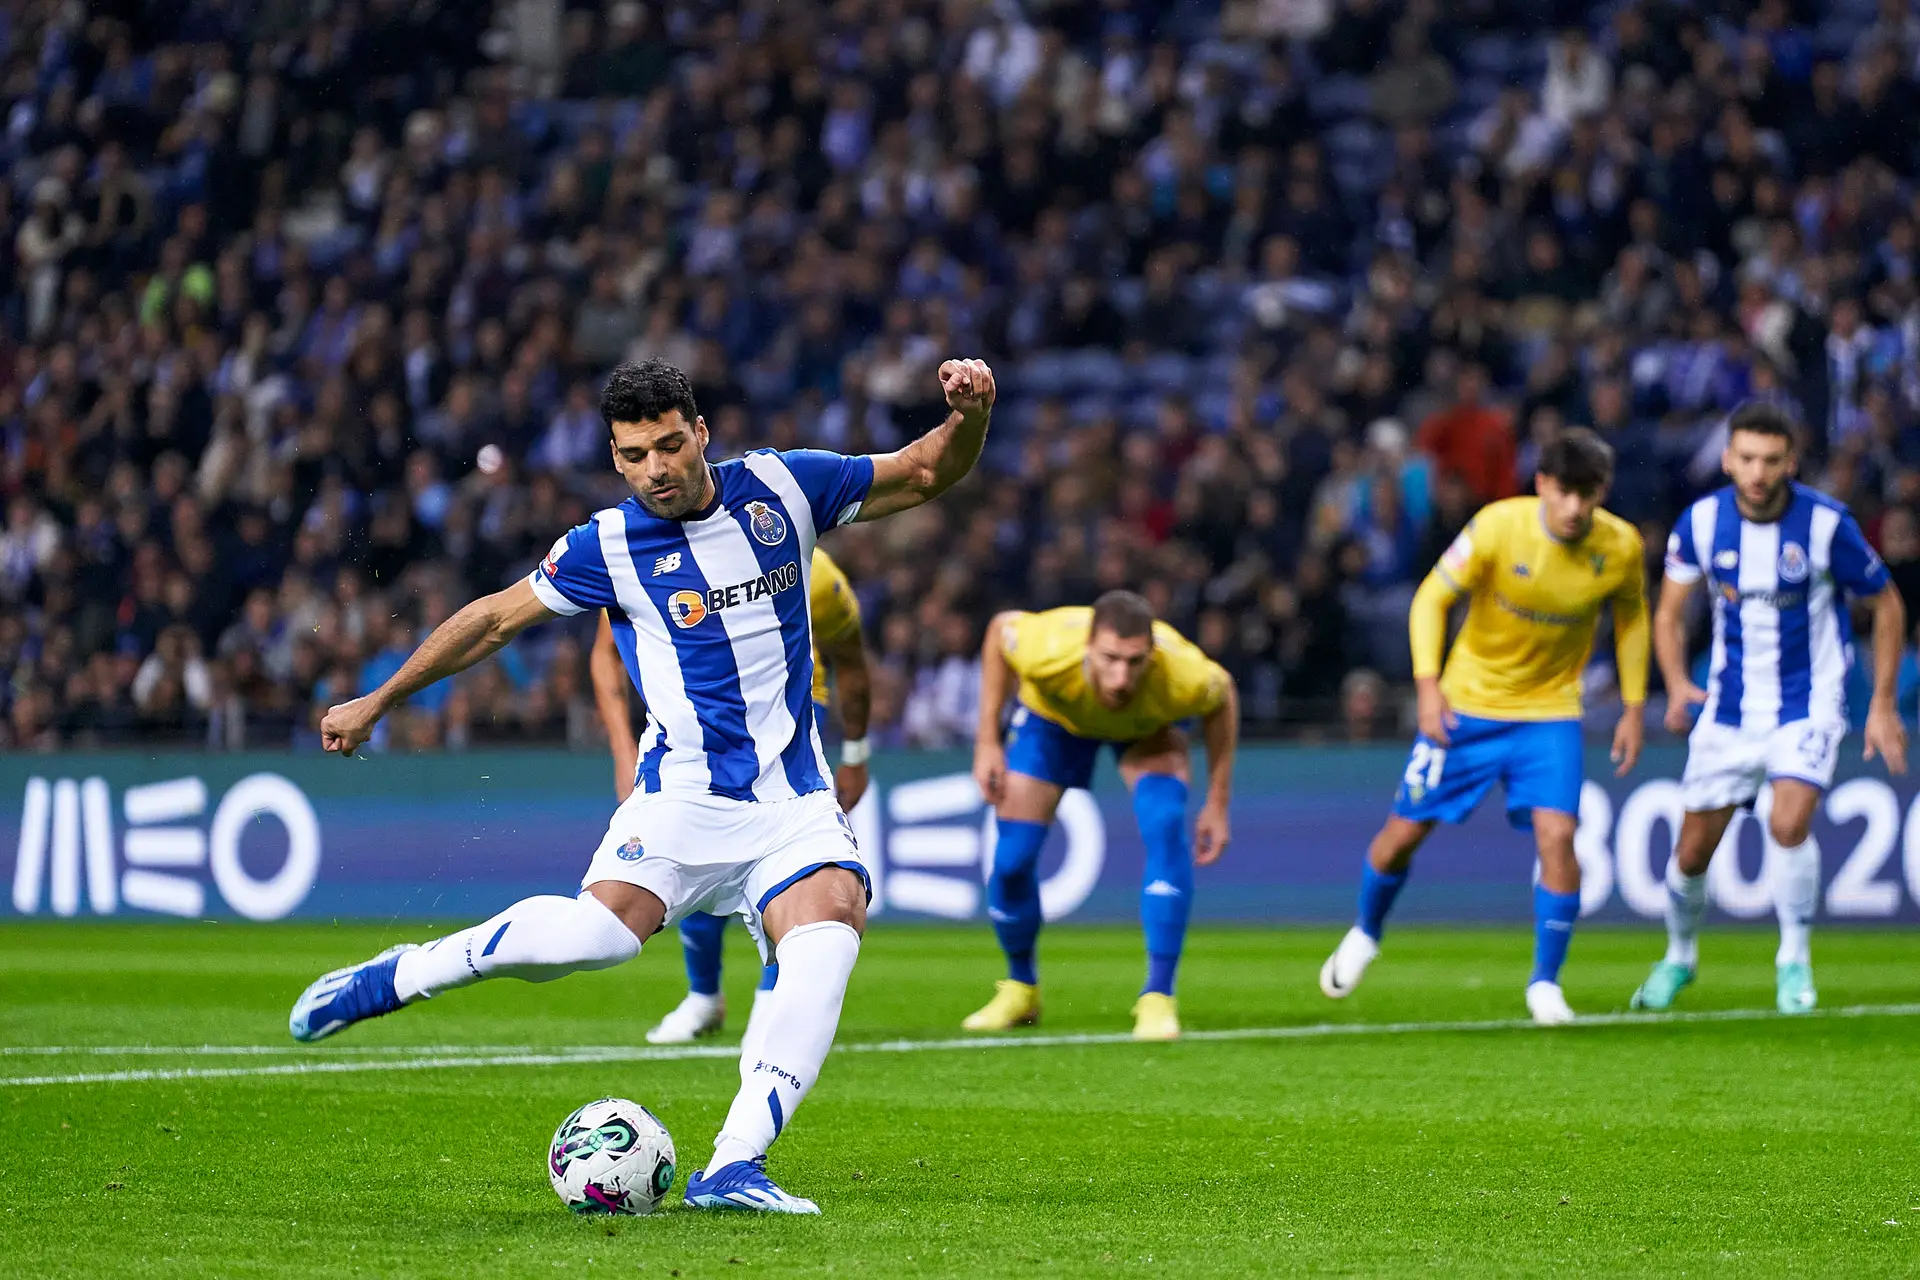 Futebol: Sporting CP aproxima-se do título, FC Porto perdeu pontos